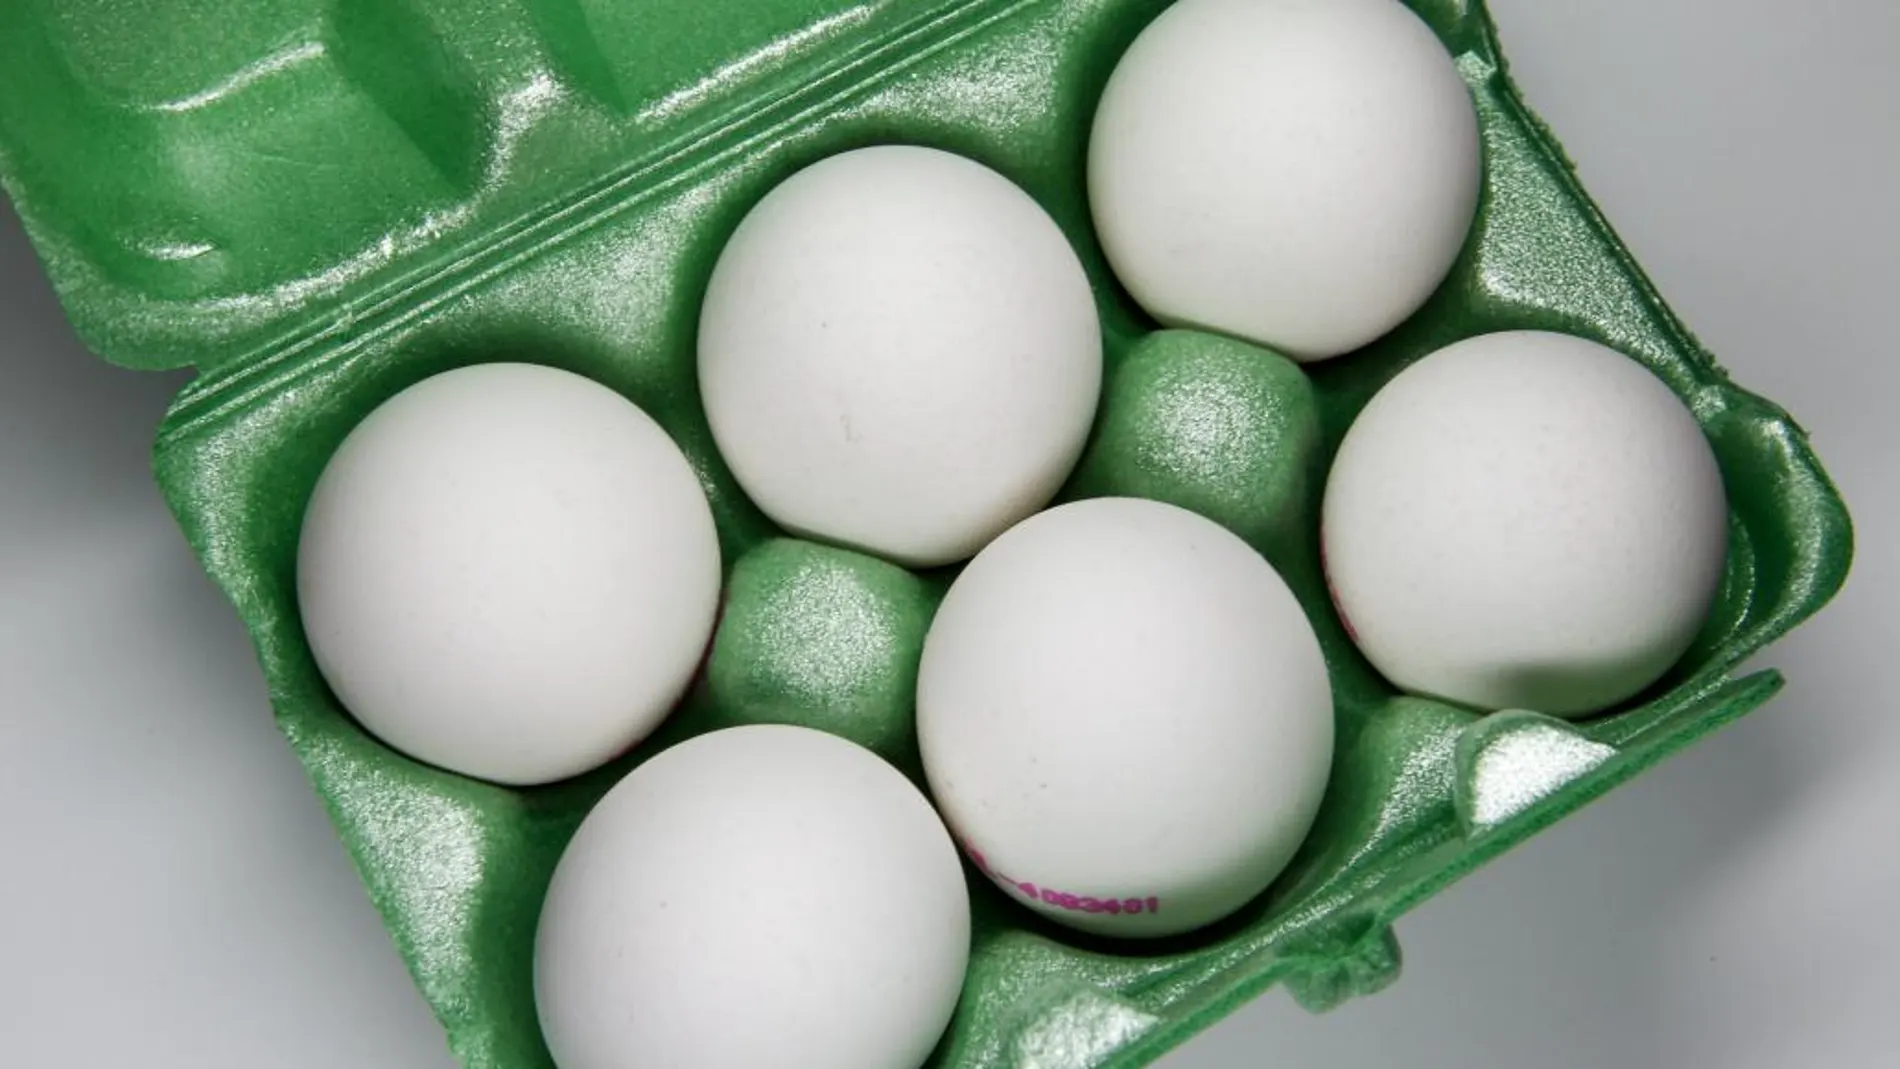 El estudio ha corroborado las bondades de una dieta infantil que incluya el consumo de huevos